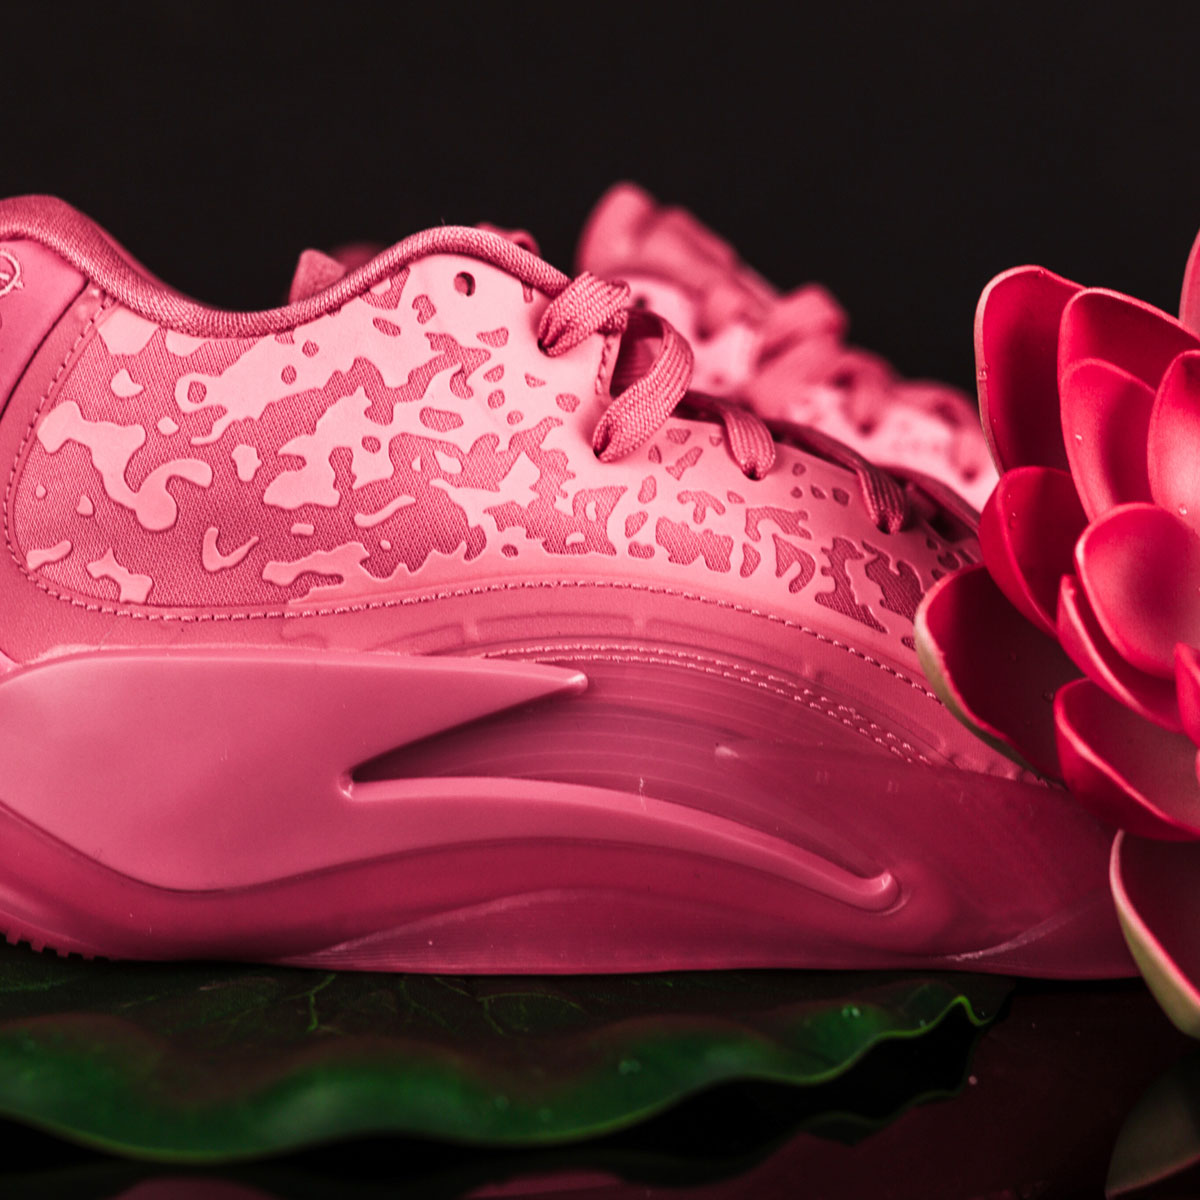 Nigel Sylvester × Nike Claquette Jordan Sophia pour Femme Gris 29cm Pink Lotus Dr0675 600 Release Date 2